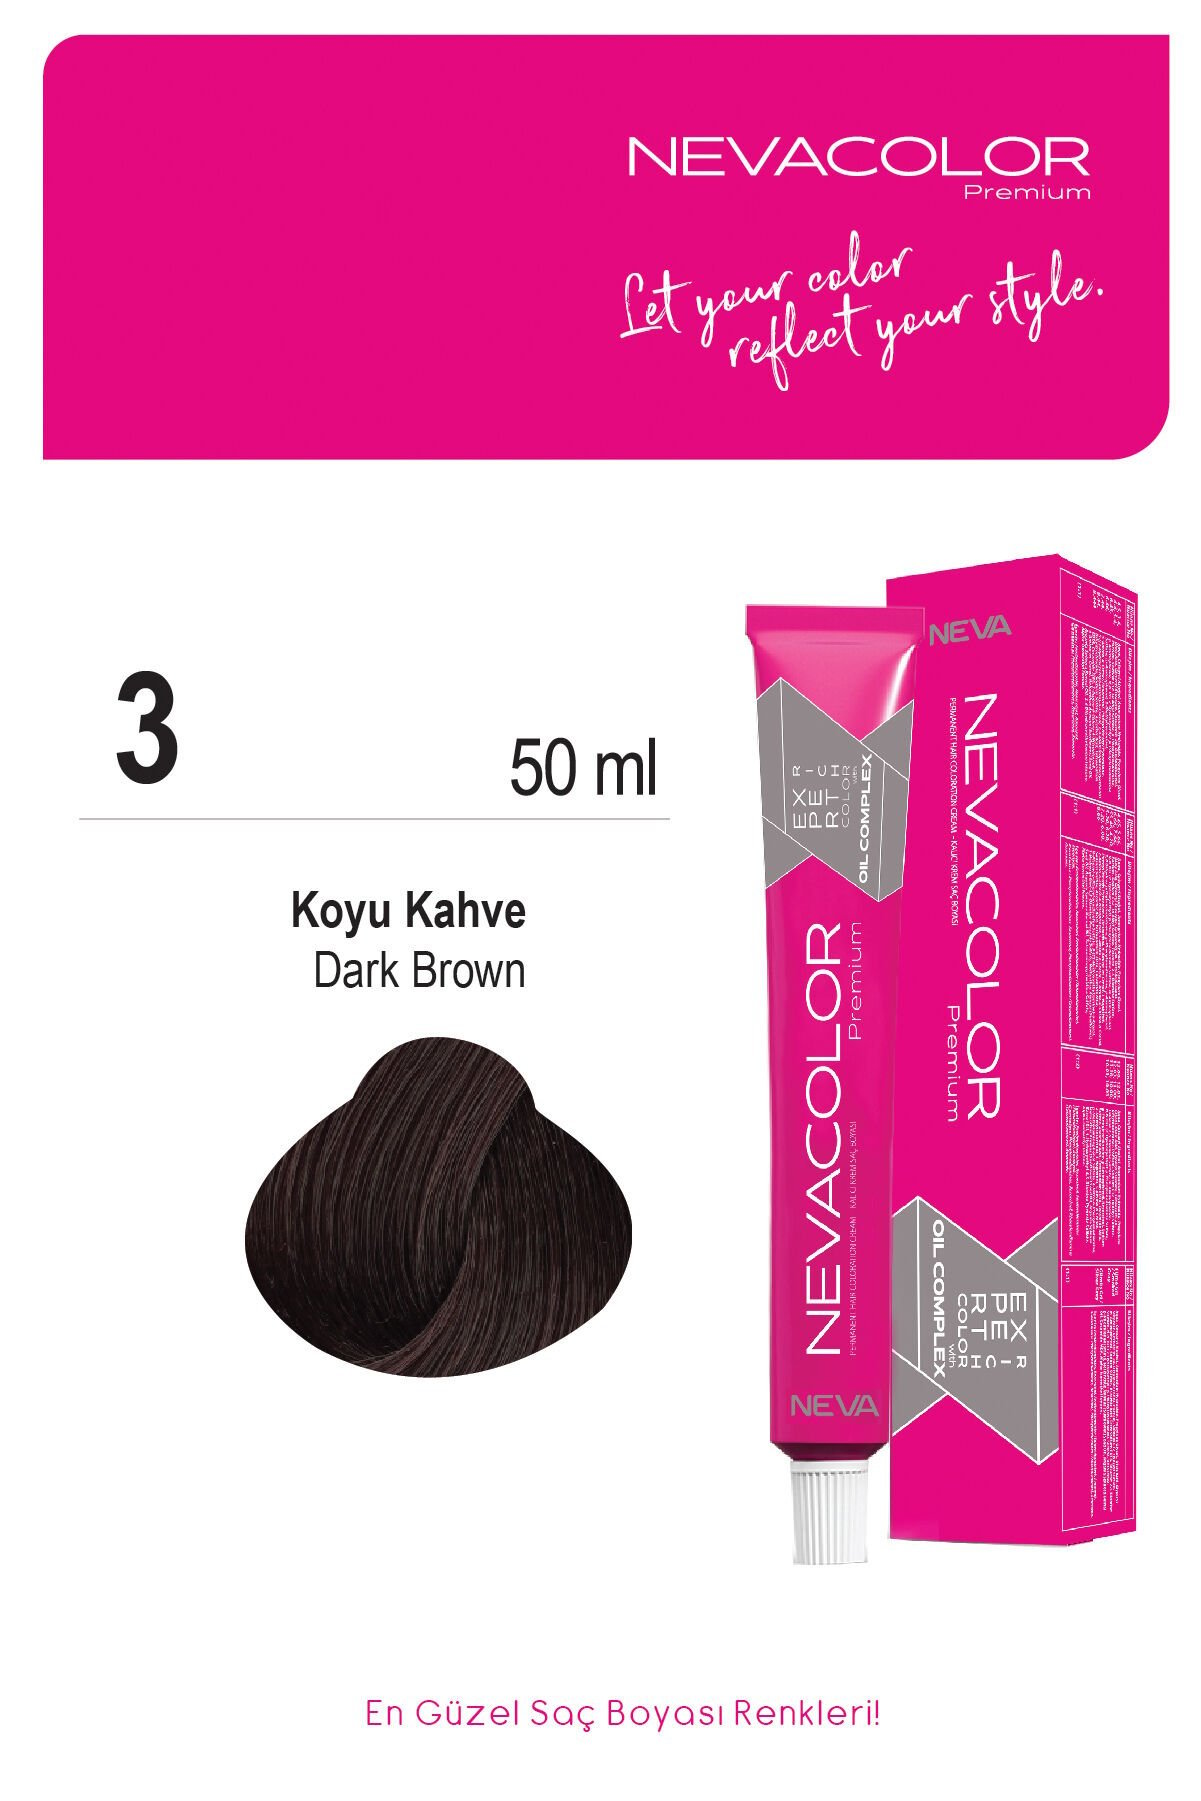 Nevacolor Premium 3. Koyu Kahve - Kalıcı Krem Saç Boyası 50 g Tüp